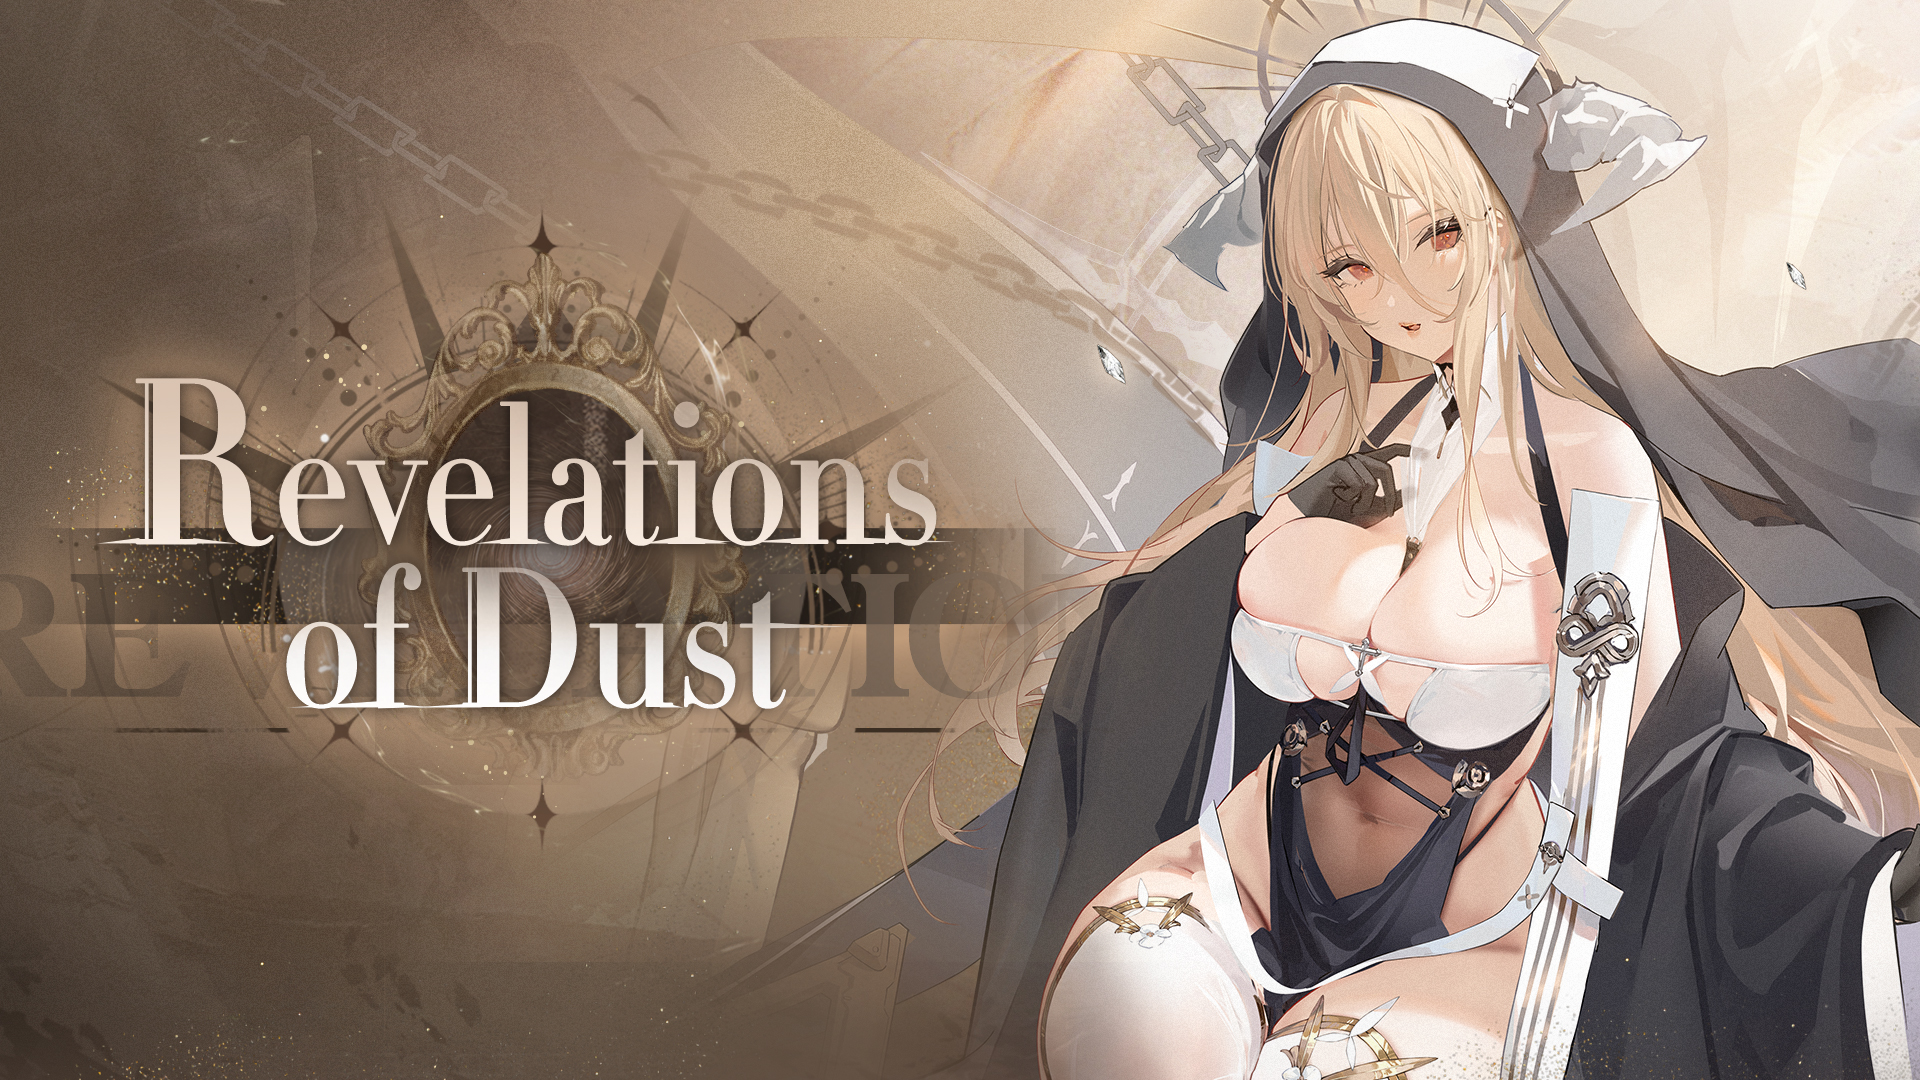 azur lane Revelations of Dust new event